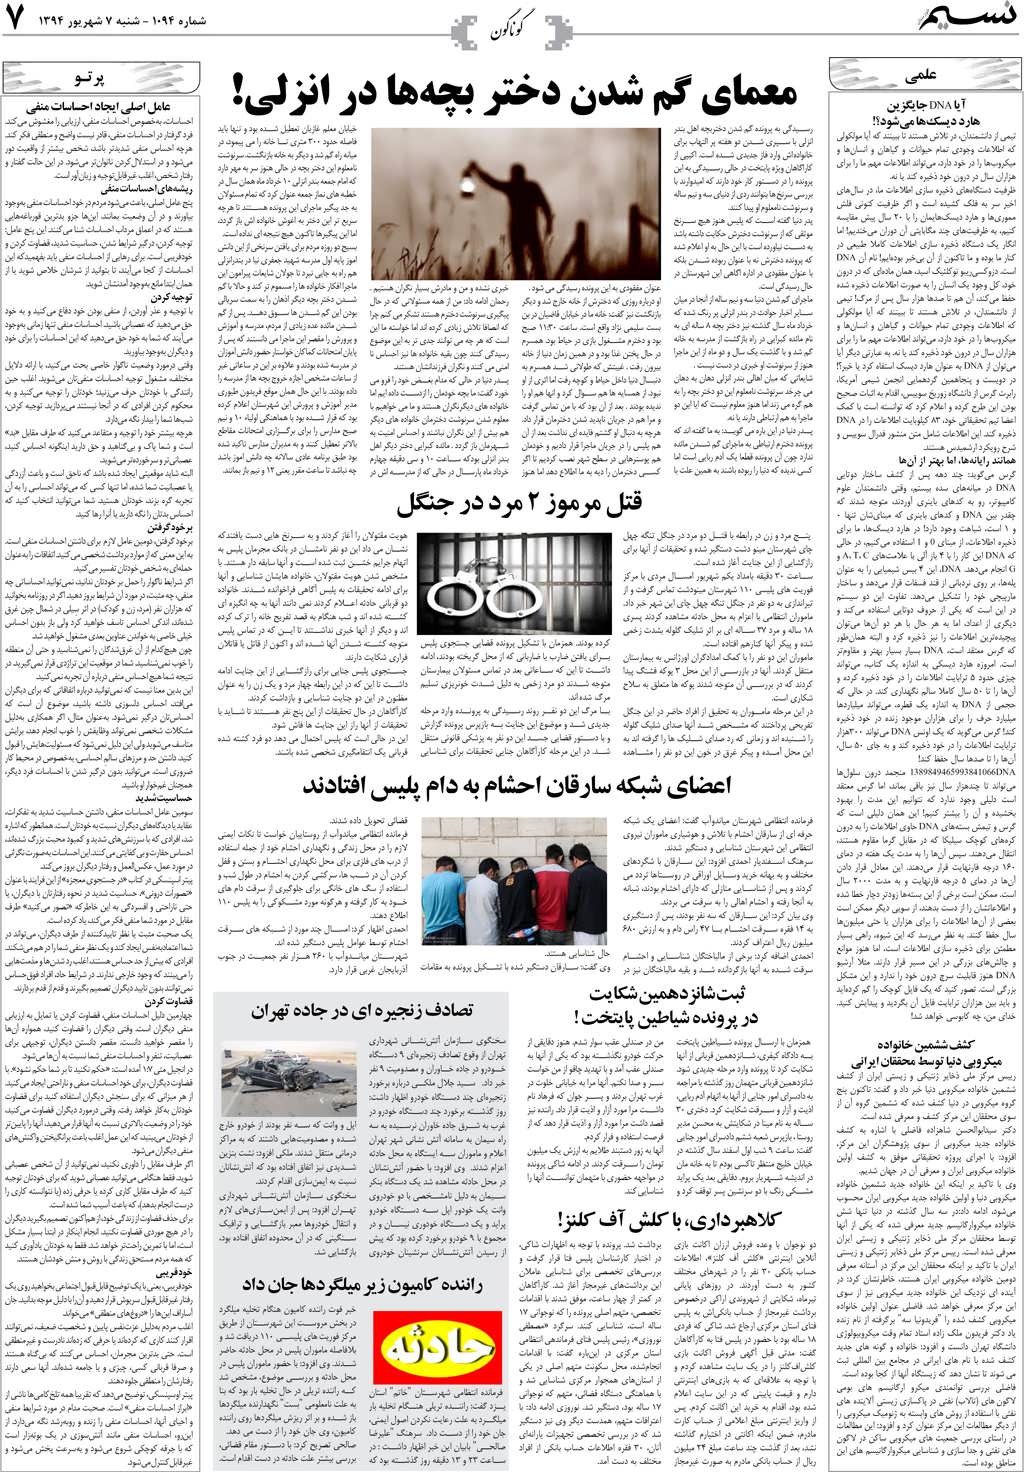 صفحه گوناگون روزنامه نسیم شماره 1094